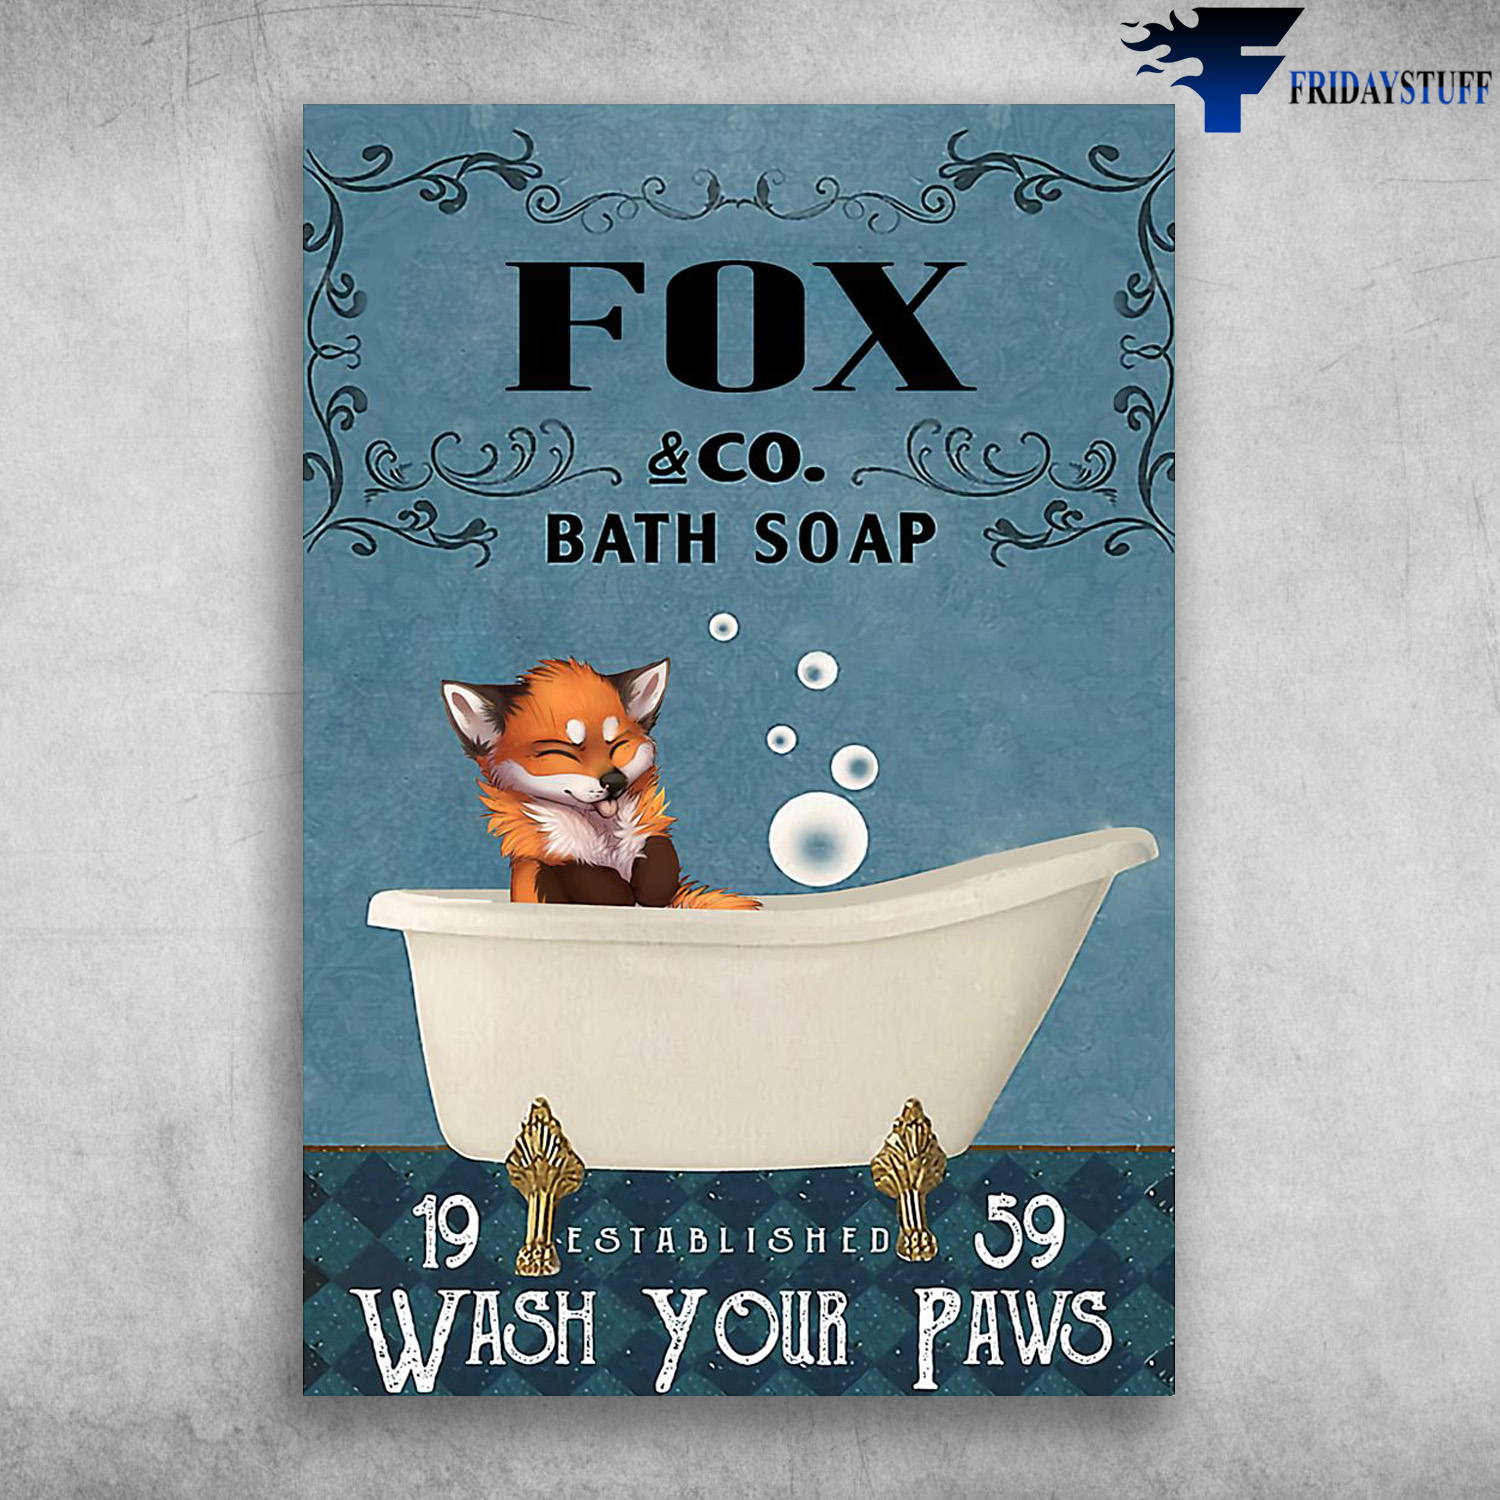 Fox In Bath Soap - Bath Soap, 19 Established 59, Wash Your Fins